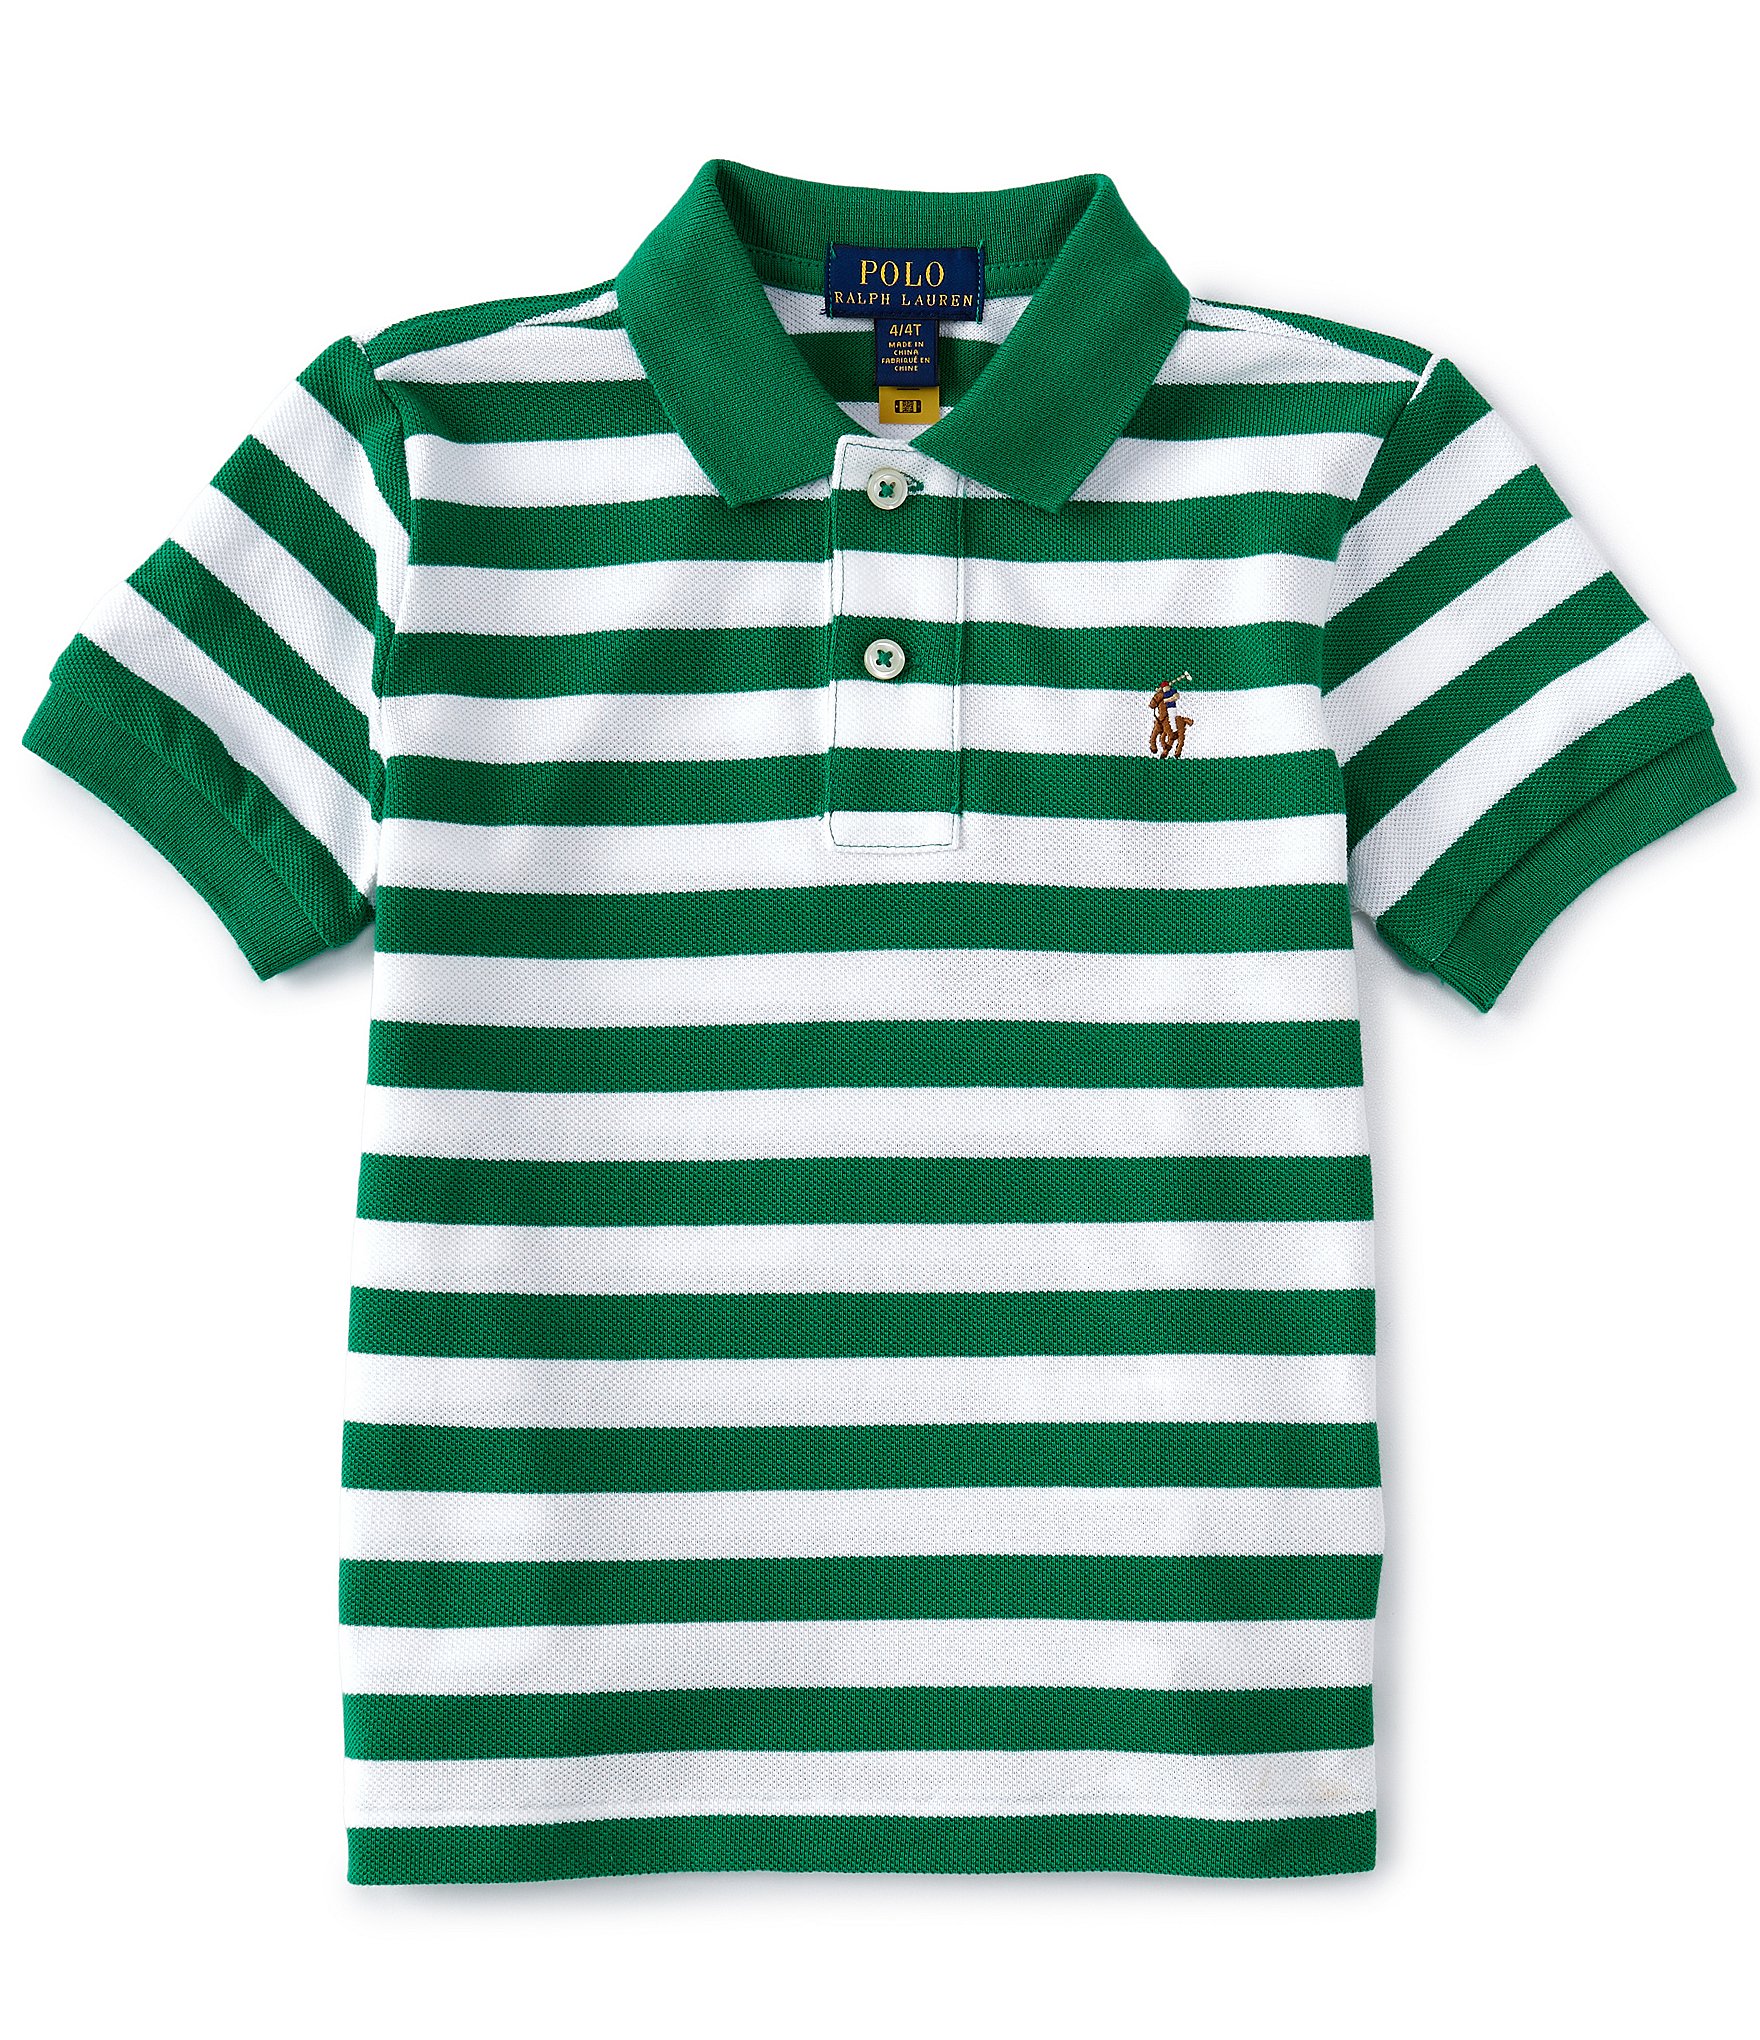 Boys polo. Polo Ralph Lauren Stripe Green Shirt.